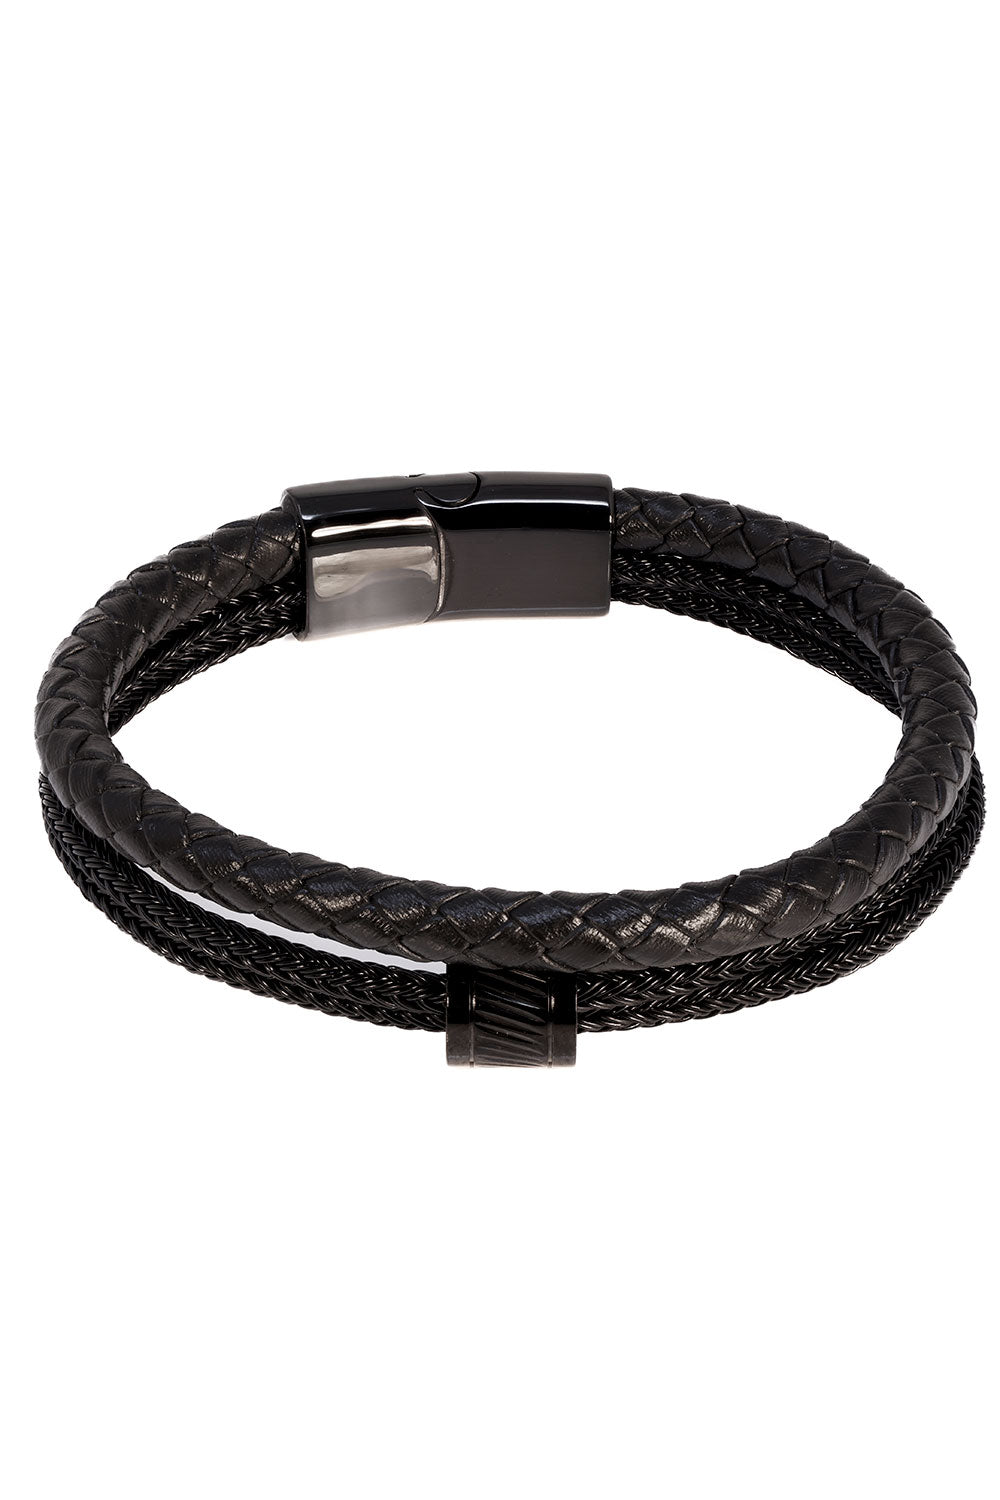 Barabas Unisex Multi-Layer Leather Rope Bangle Bracelets 4BMS12 Black